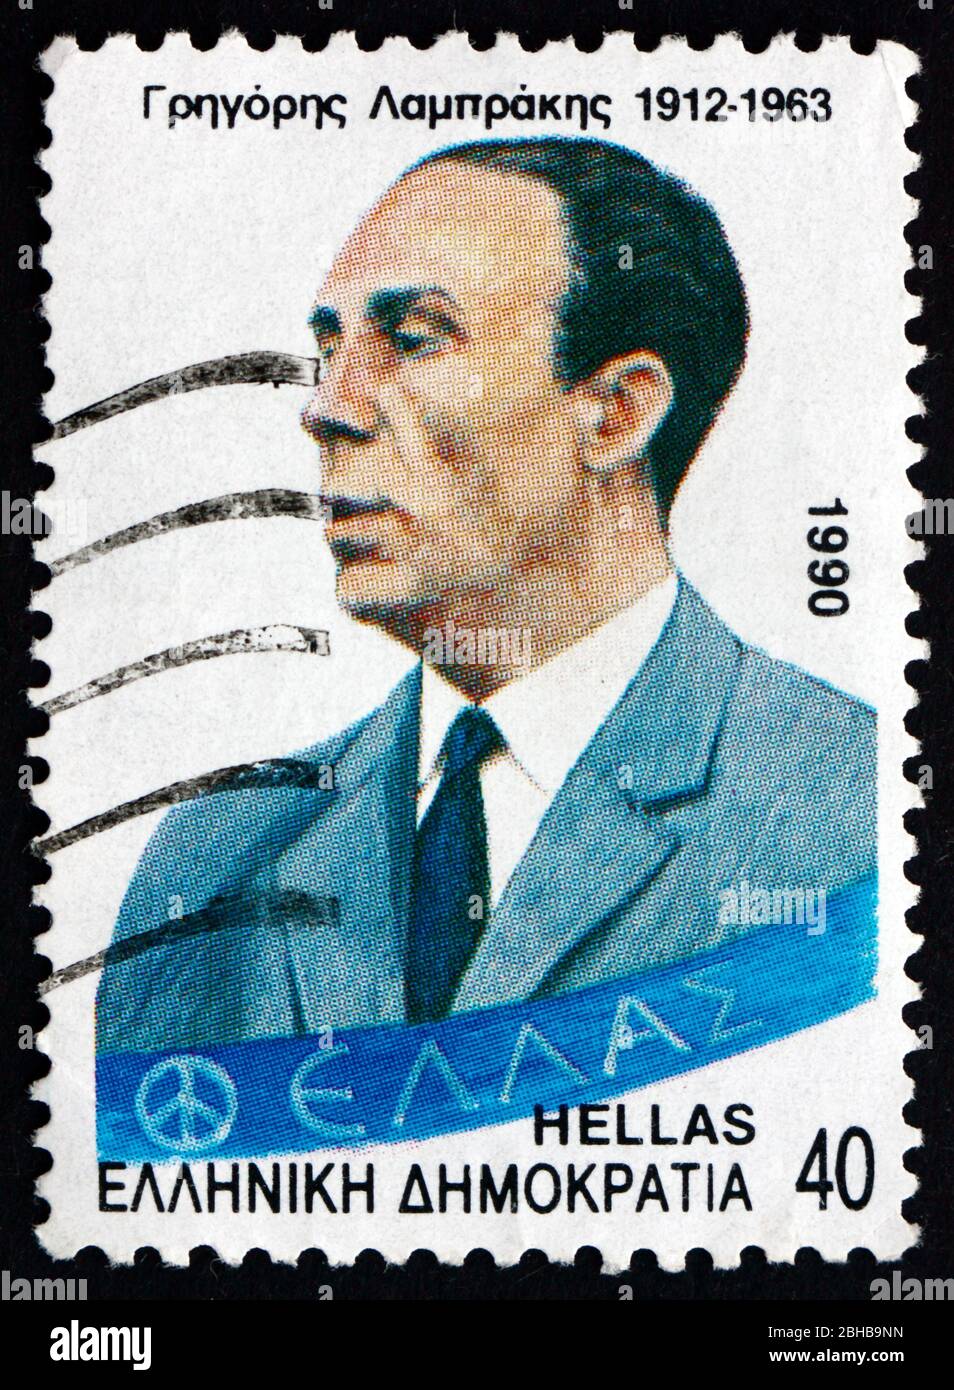 GRIECHENLAND - UM 1990: Eine Briefmarke, die in Griechenland gedruckt wurde, zeigt Gregoris Lambrakis, politischen Reformator, Politiker, Arzt, um 1990 Stockfoto